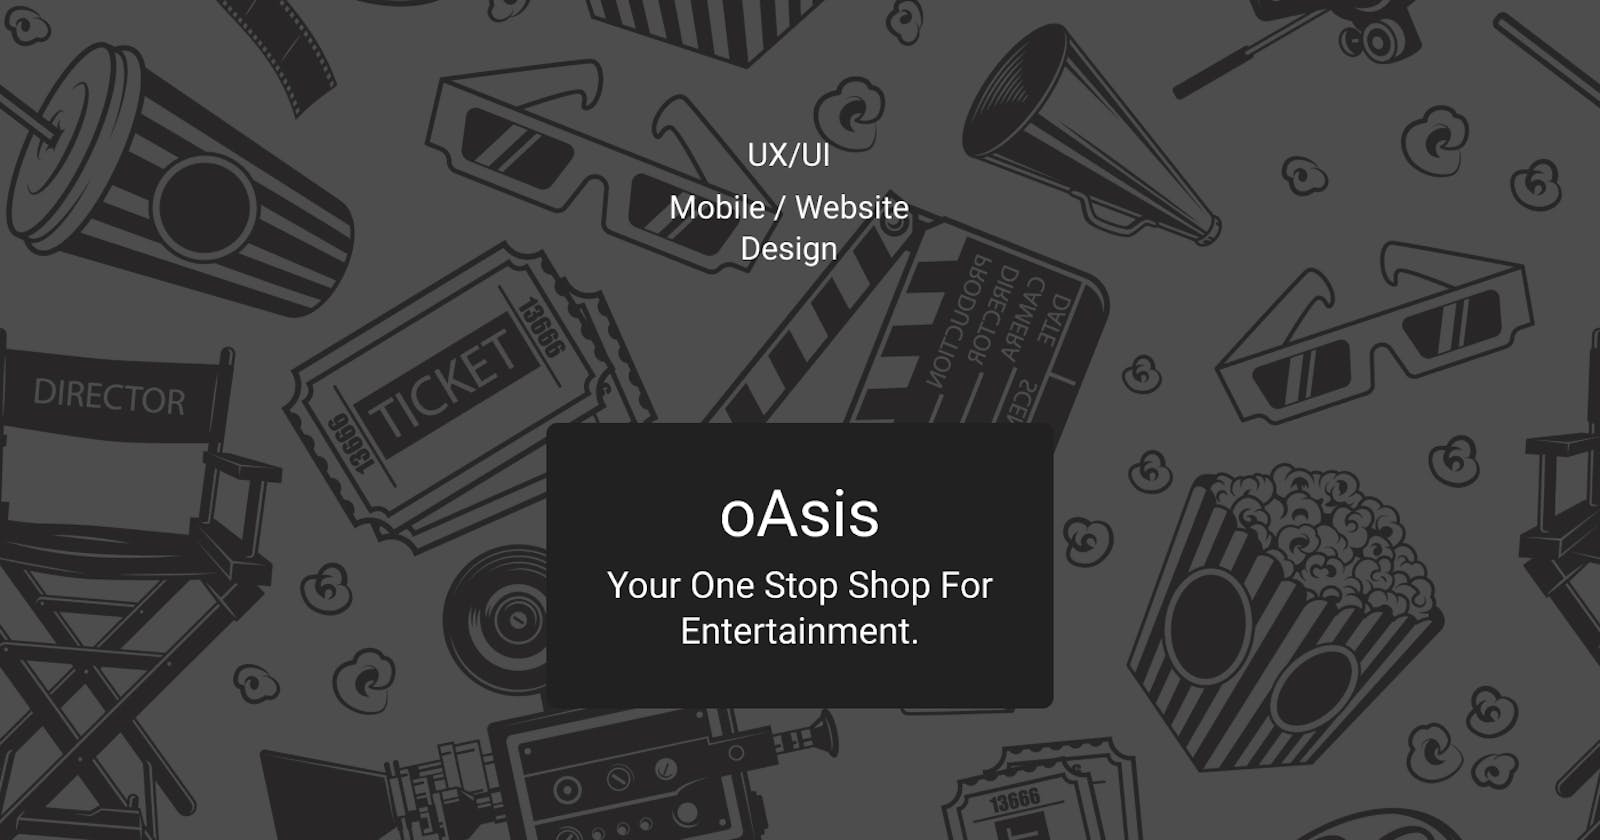 Case Study: UX/UI Design for an Entertainment App